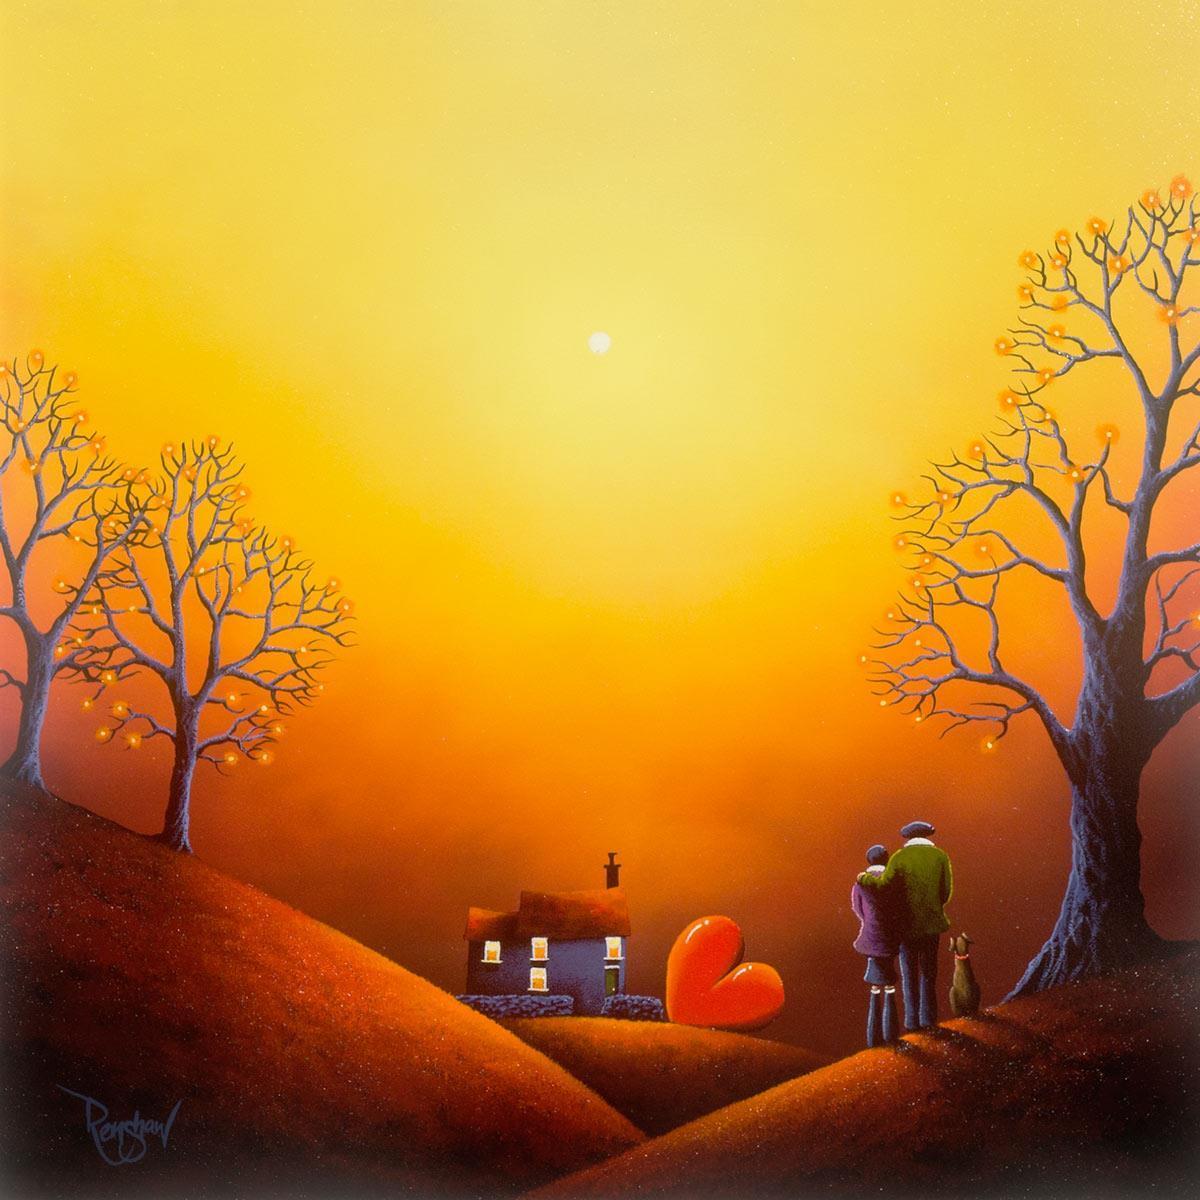 Sunset Embers - Original David Renshaw